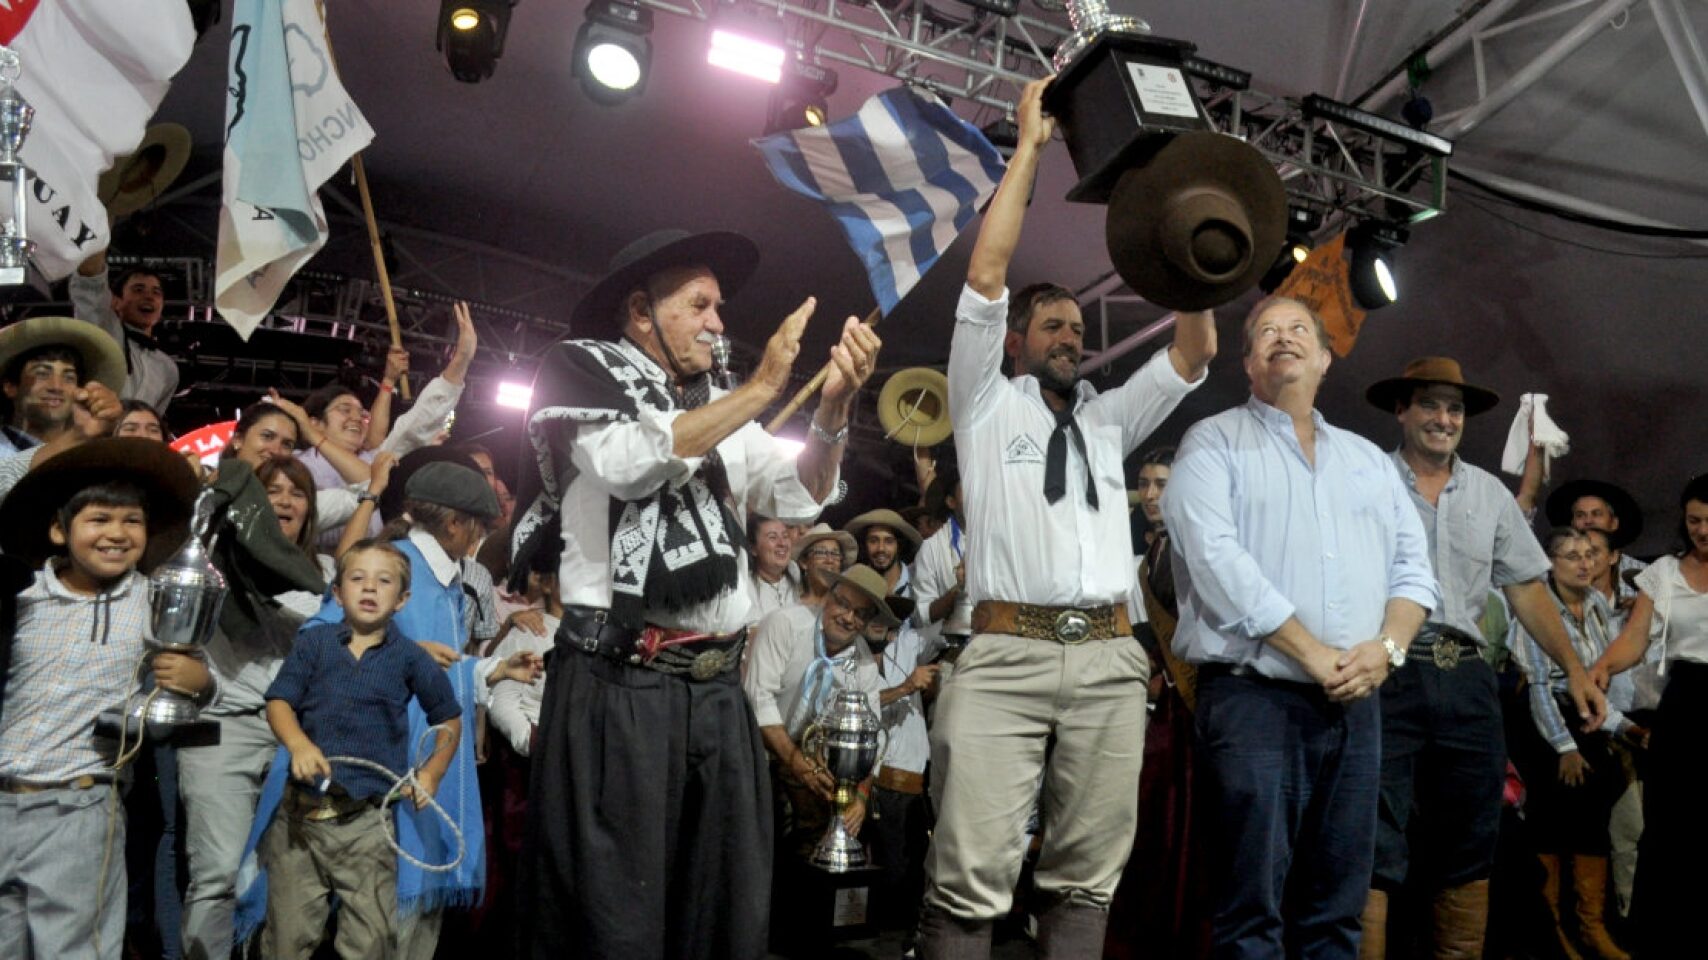 Festejos de la aparceria A poncho y espuelas, su presidente levanta la copa ante la mirada del intendente de tacuarembó, Wilson Esquerra.